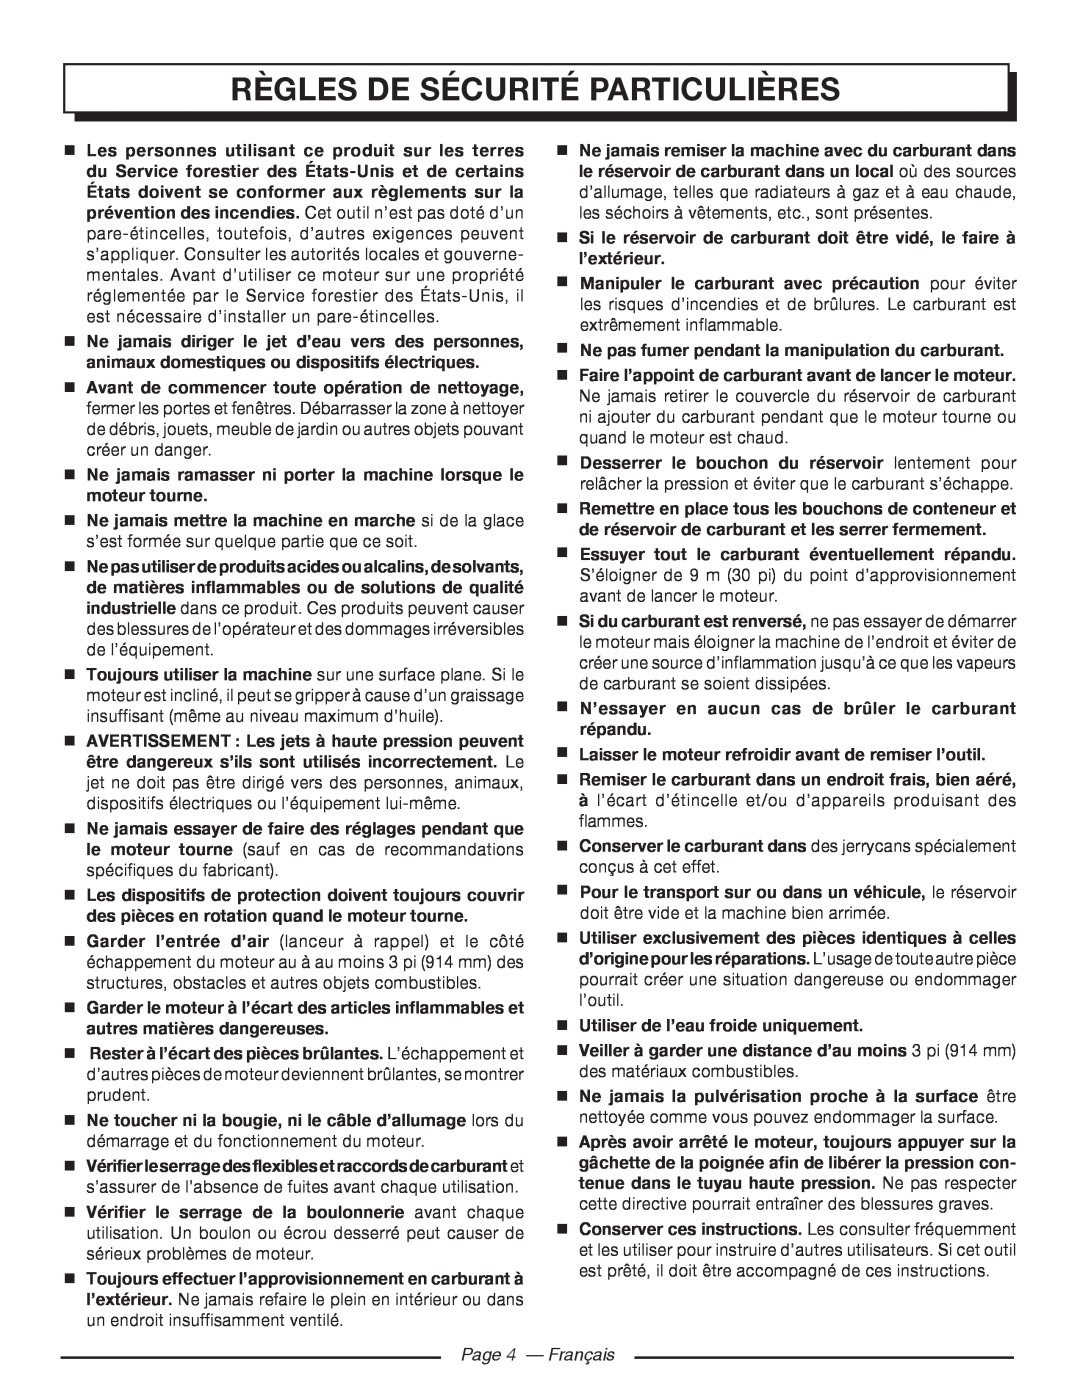 Homelite UT80546, UT80977 manuel dutilisation Règles De Sécurité Particulières, Page 4 - Français 